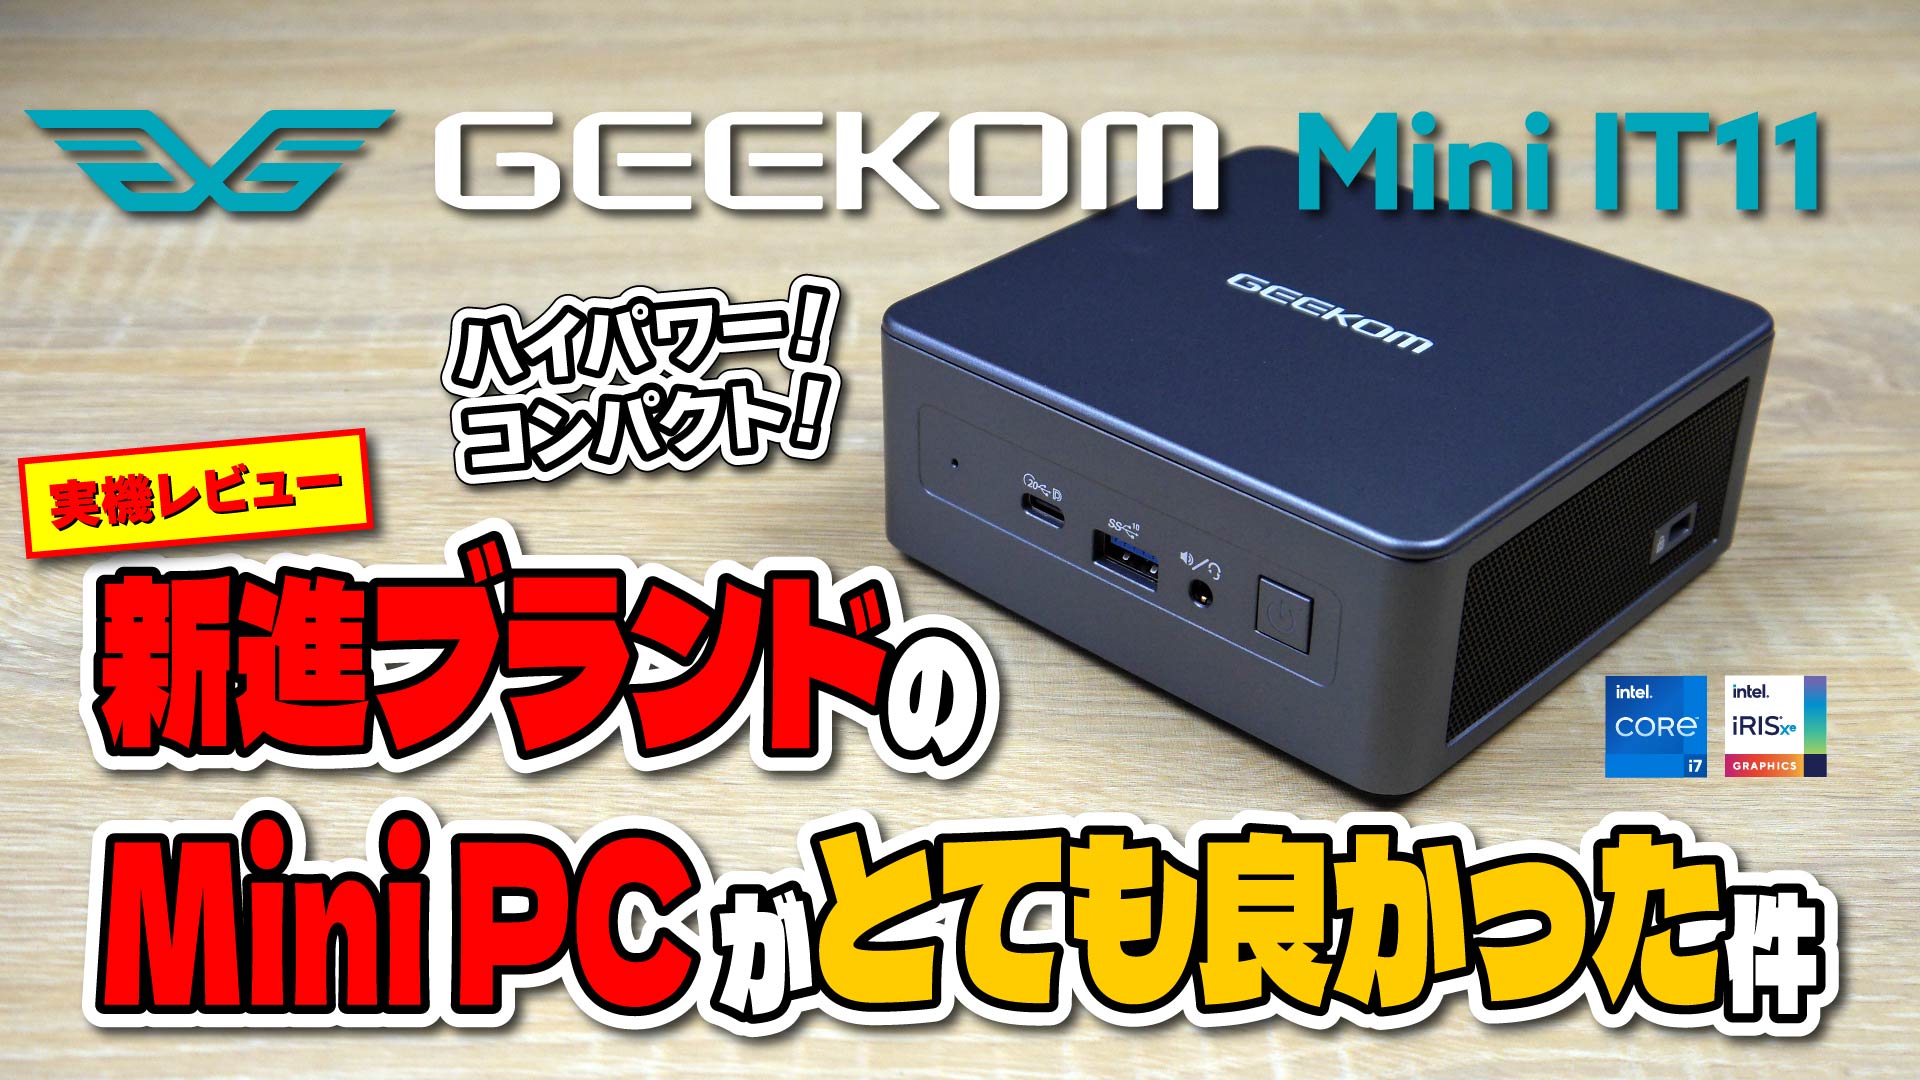 【実機レビュー】GEEKOM Mini IT11: 新進ブランドのハイパフォーマンス Mini PC がとても良かった件